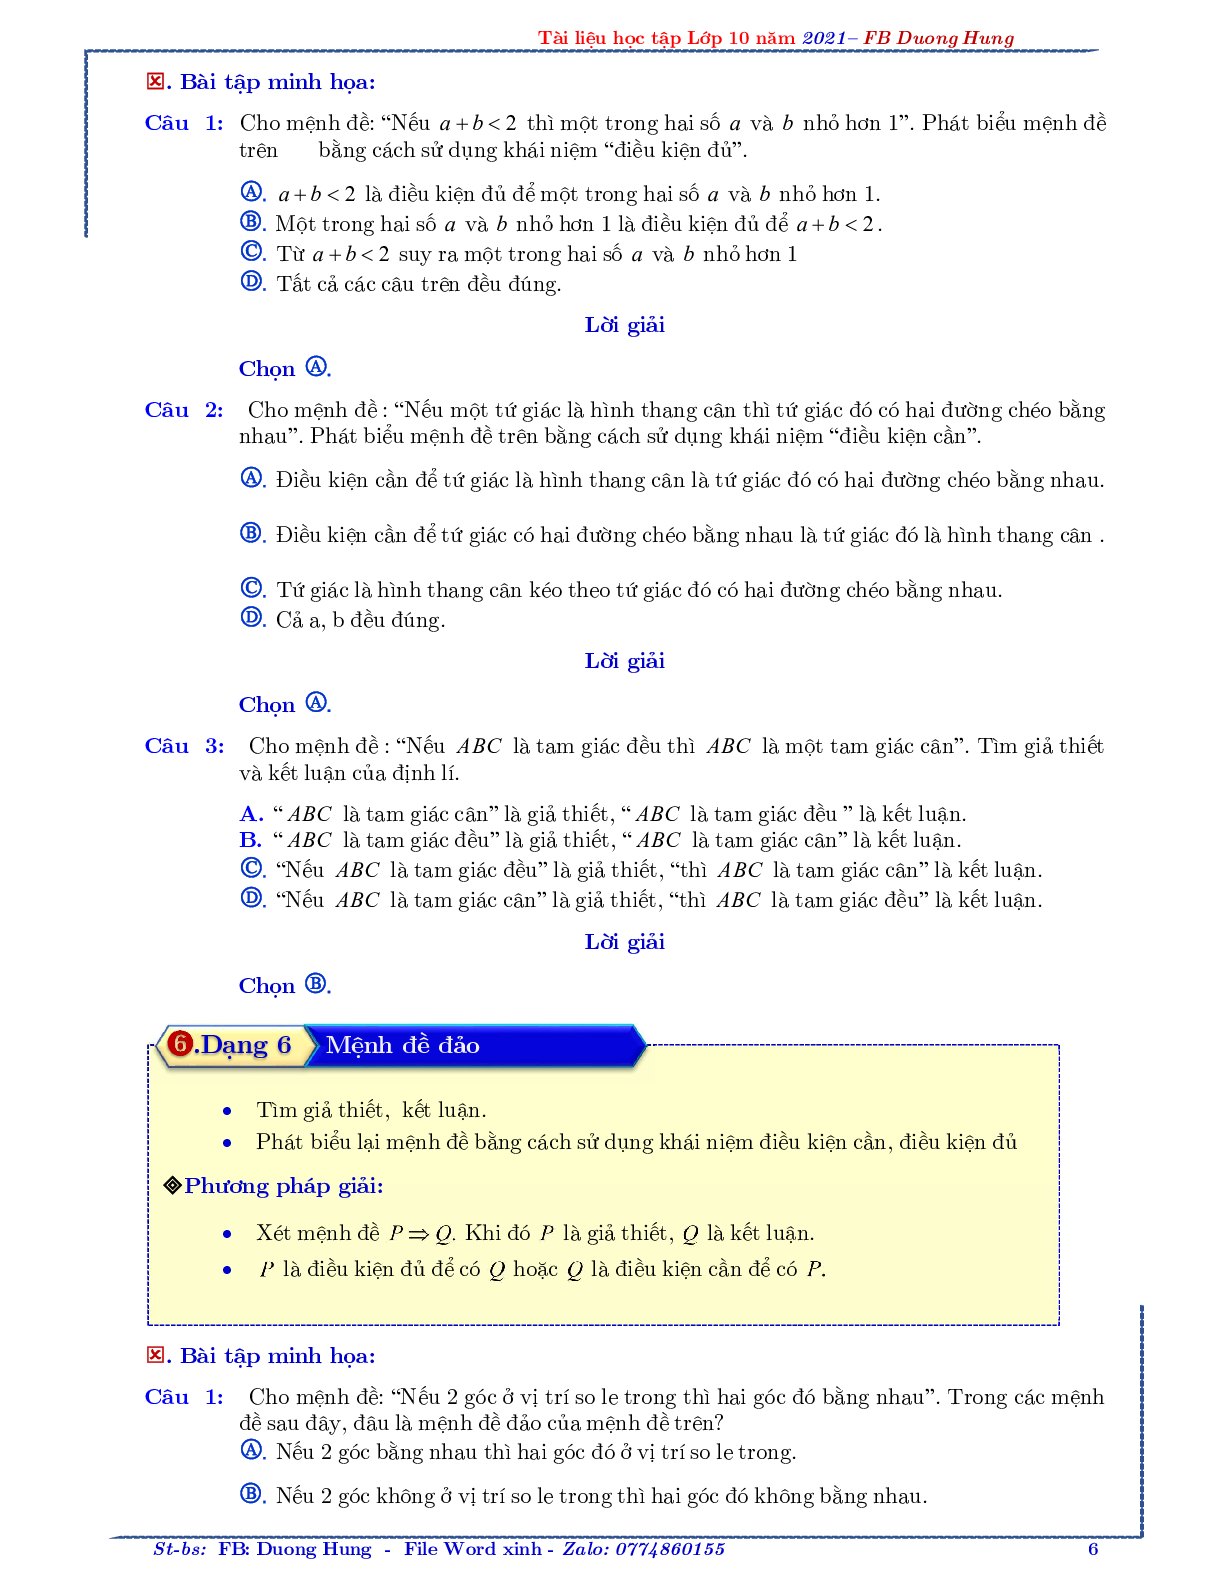 Chuyên đề về mệnh đề và tập hợp - bản 1 (trang 6)